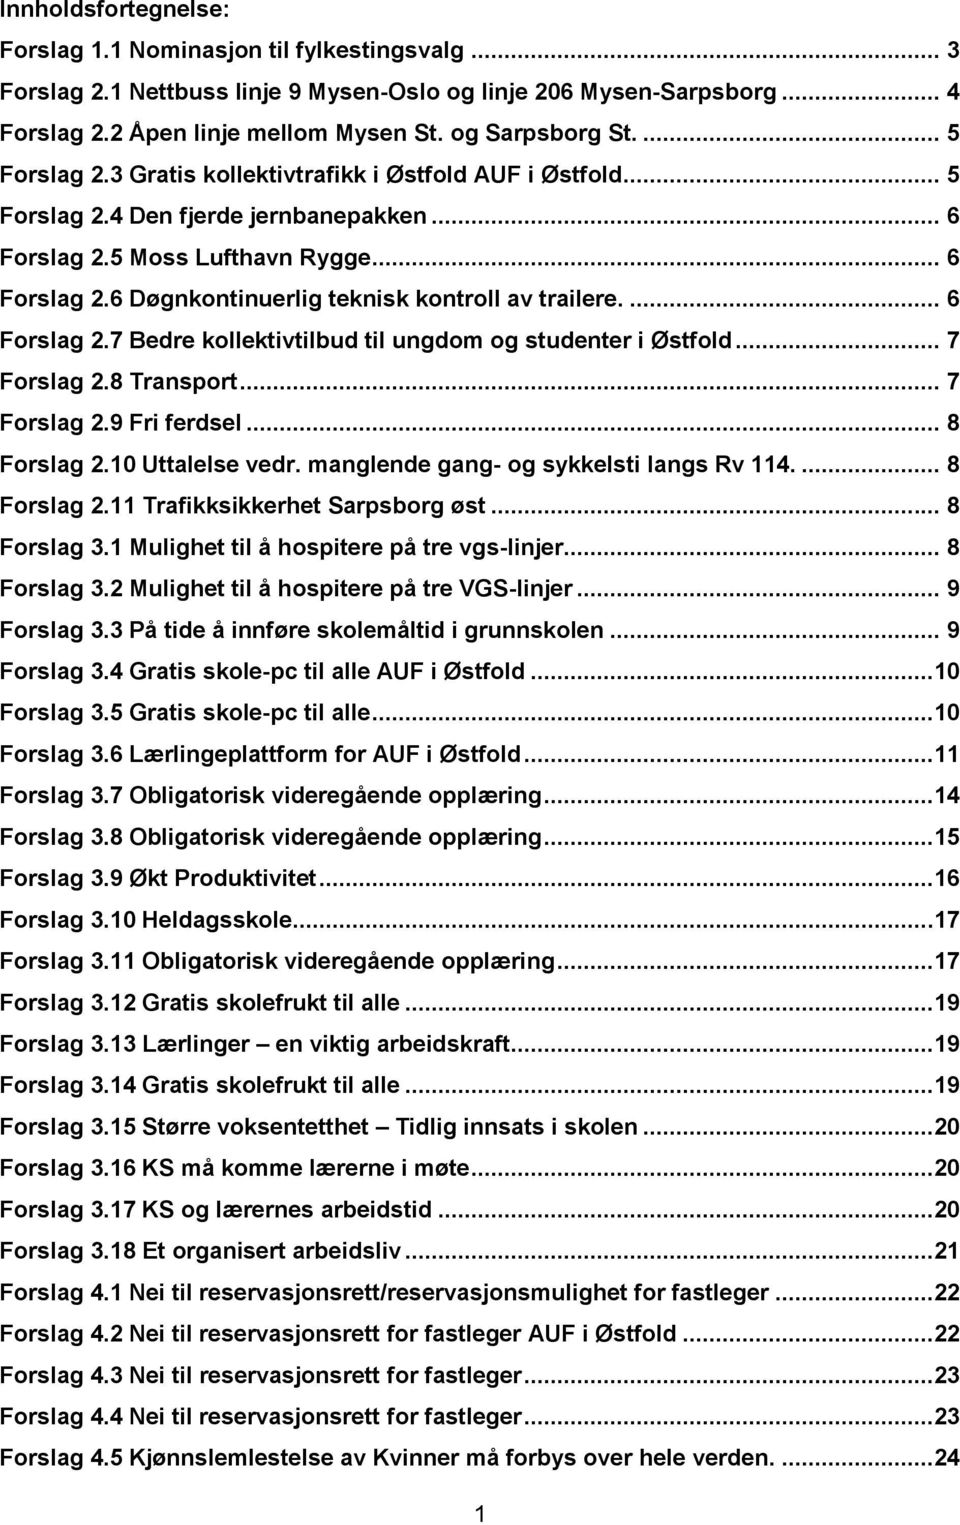 ... 6 Forslag 2.7 Bedre kollektivtilbud til ungdom og studenter i Østfold... 7 Forslag 2.8 Transport... 7 Forslag 2.9 Fri ferdsel... 8 Forslag 2.10 Uttalelse vedr.